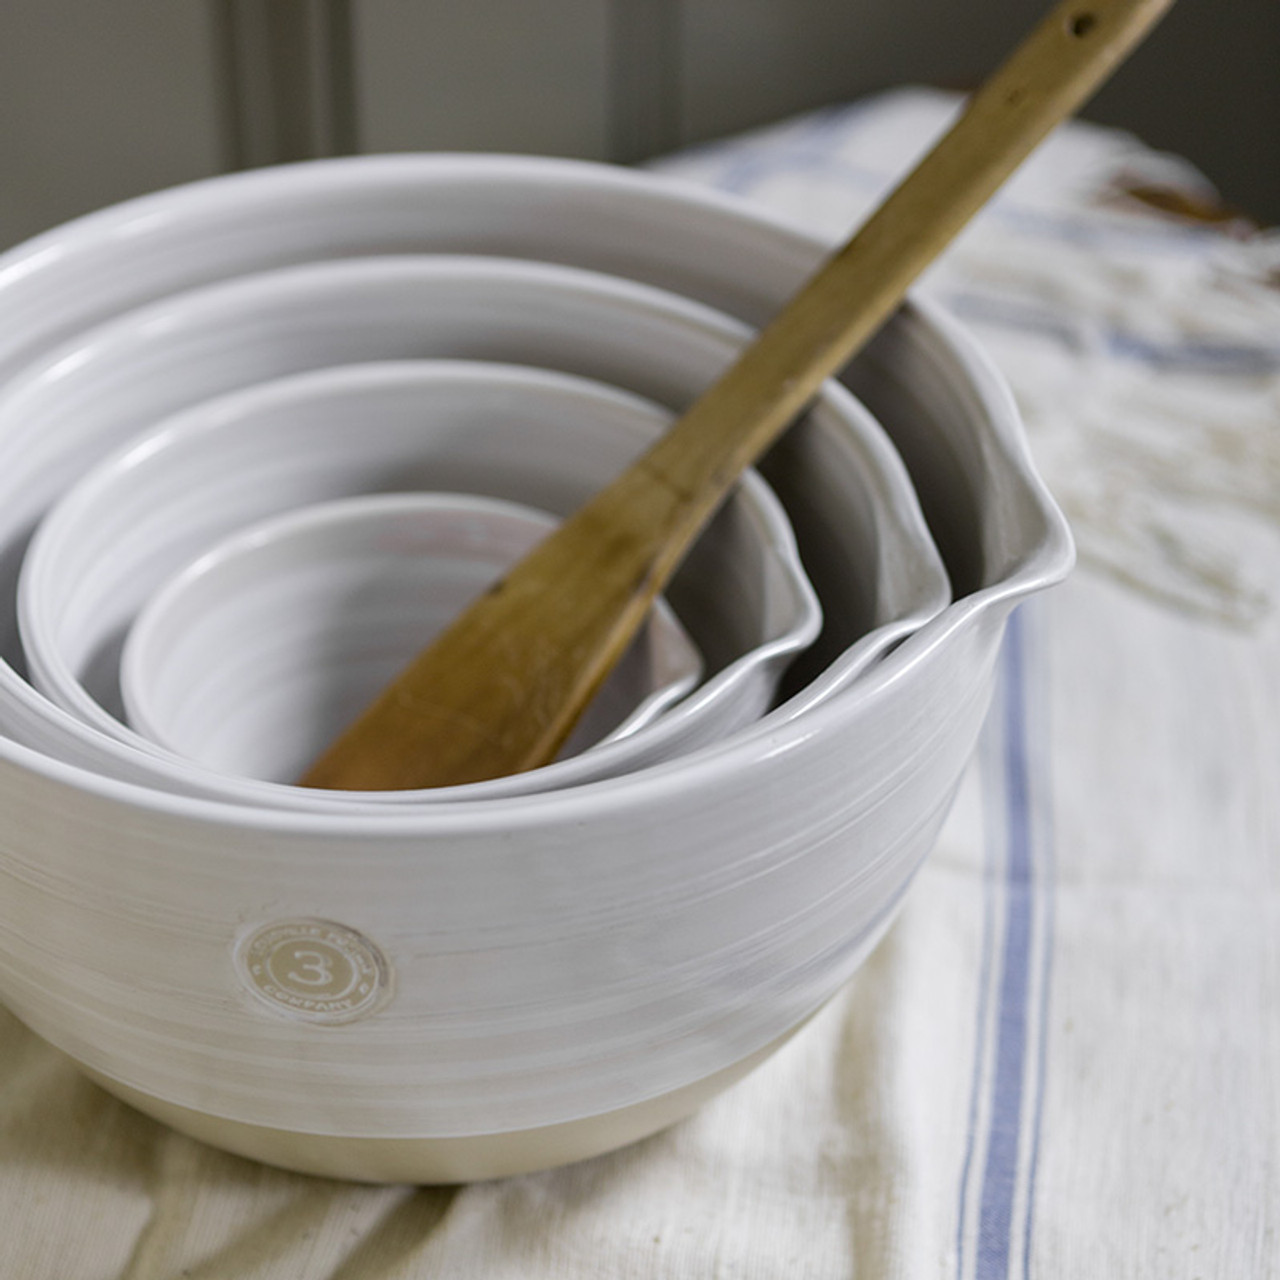 Ceramic 4-Piece Baking Dish Set - White